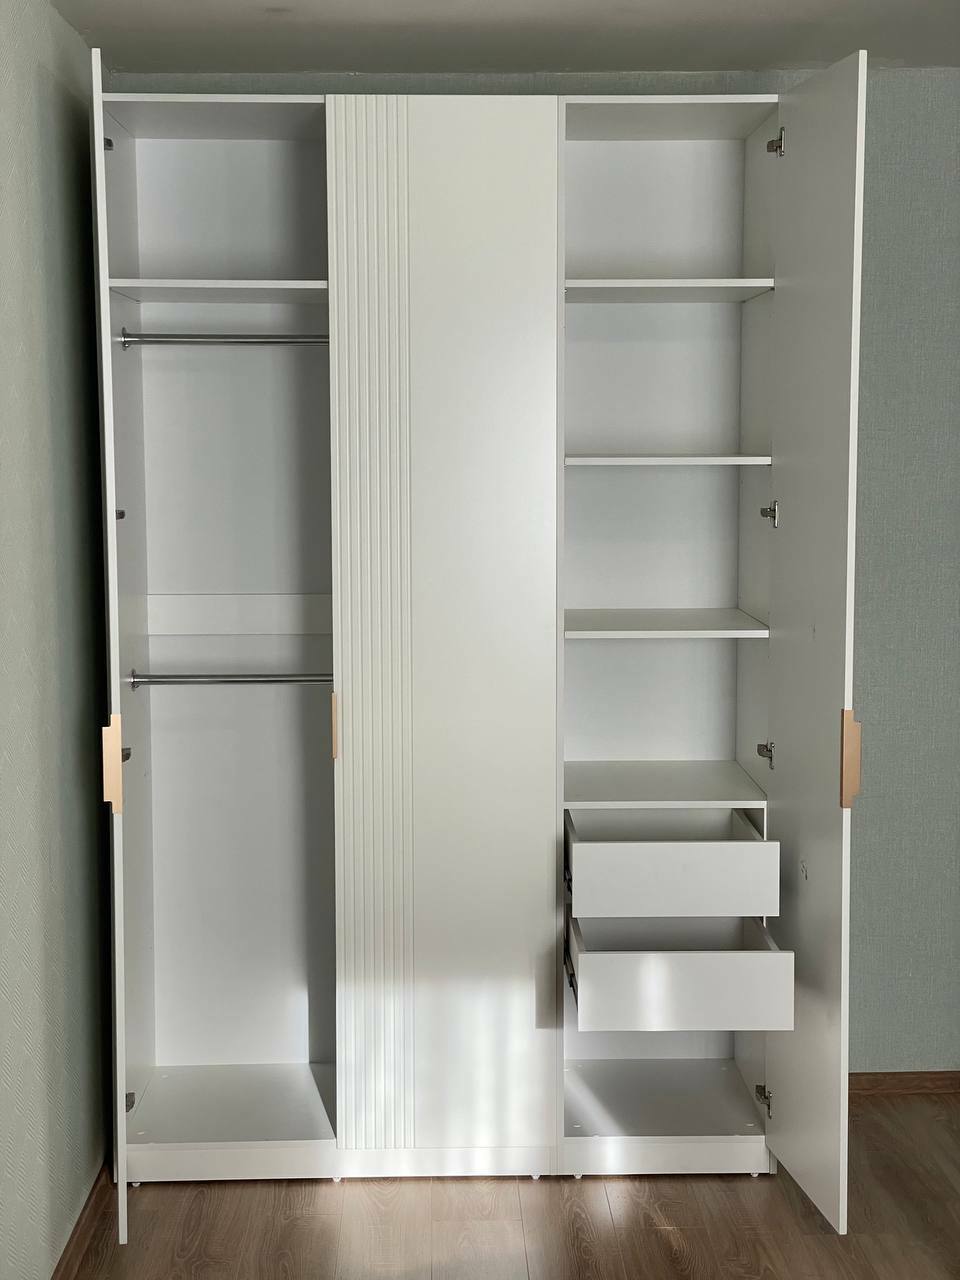 Белый распашной шкаф из МДФ с рифлеными фасадами, ящиками и штангой для одежды, сделанный на заказ